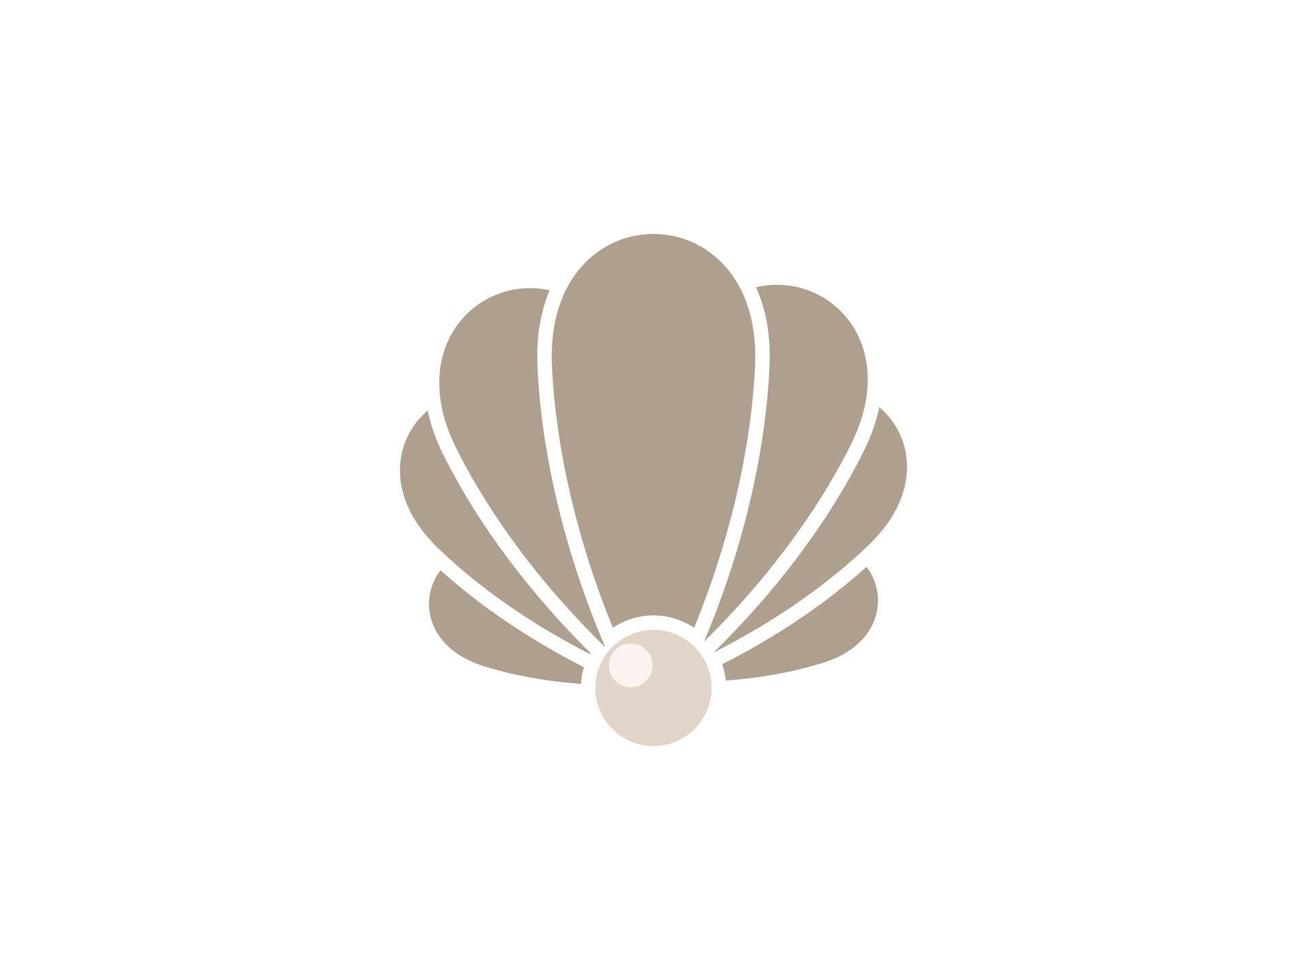 diseño de logotipo de joyería de concha de perla elegante de lujo de belleza. utilizable para logotipos comerciales y de marca. elemento de plantilla de diseño de logotipo de vector plano.